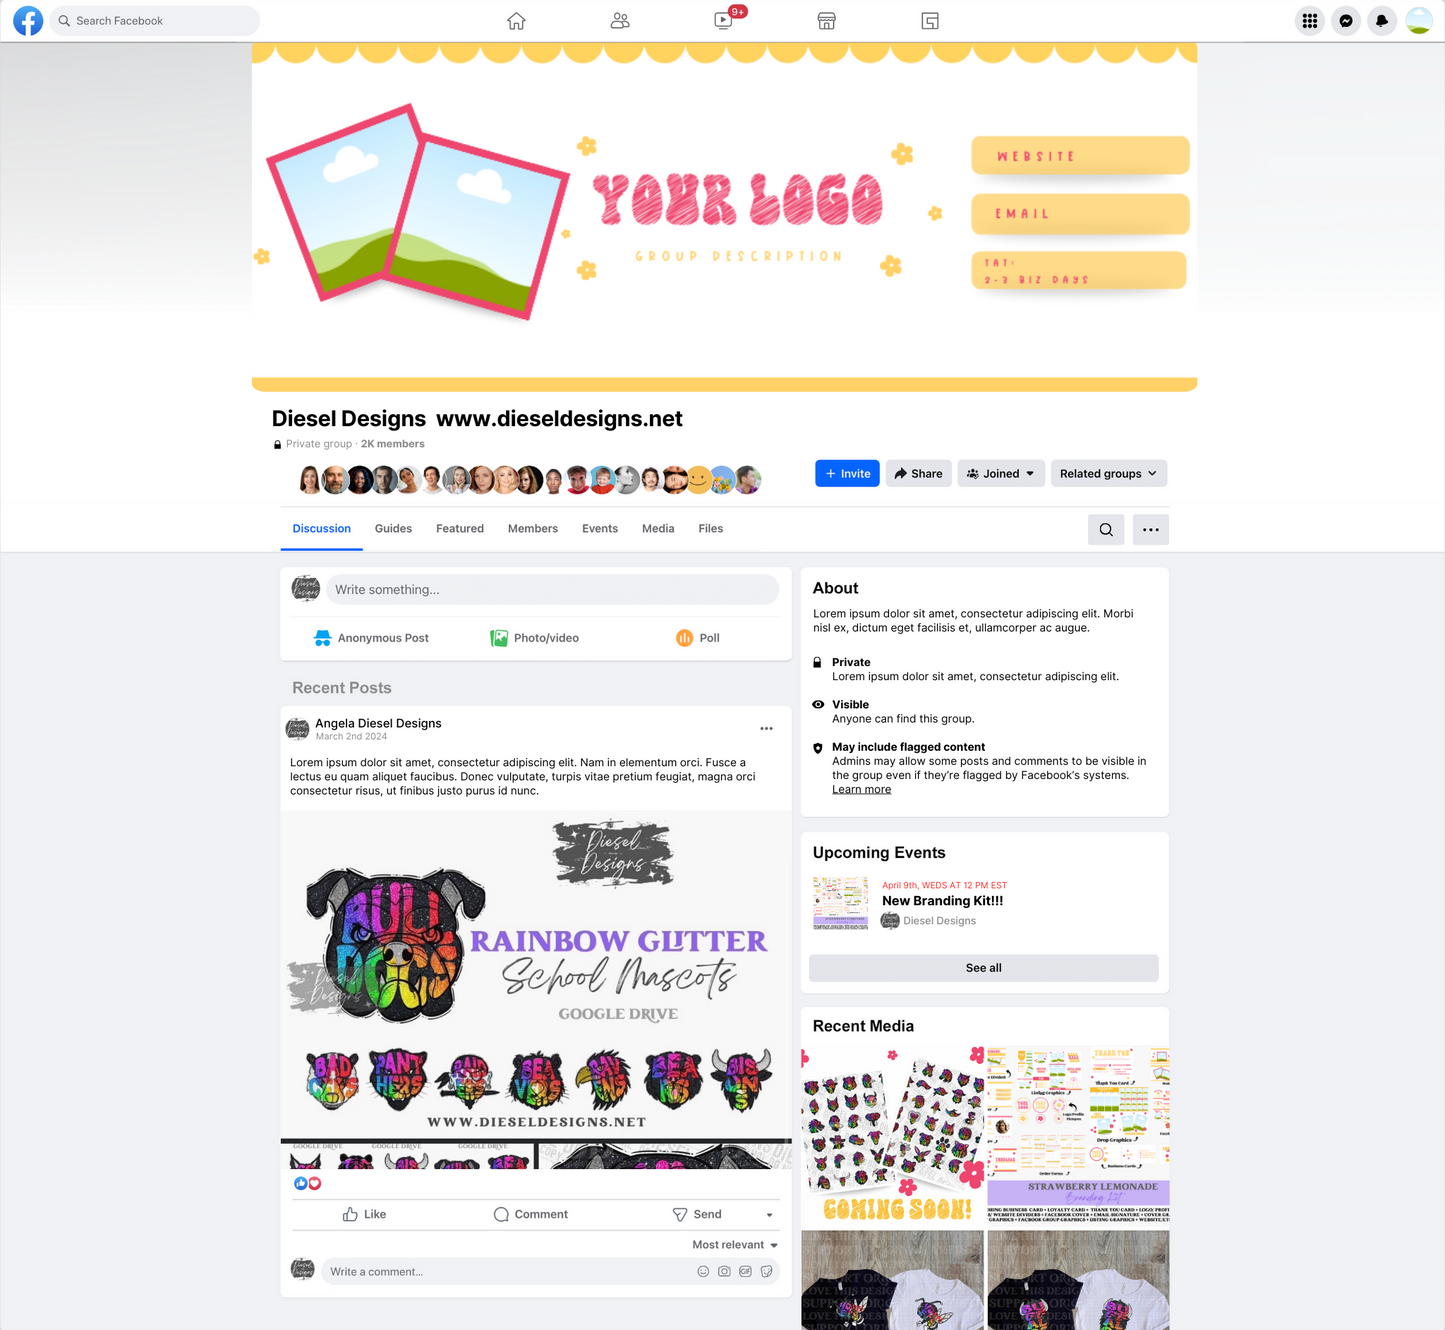 Strawberry Lemonade Branding Kit | Website Kit | Business Card | Logo | Facebook Cover | Editable in Canva